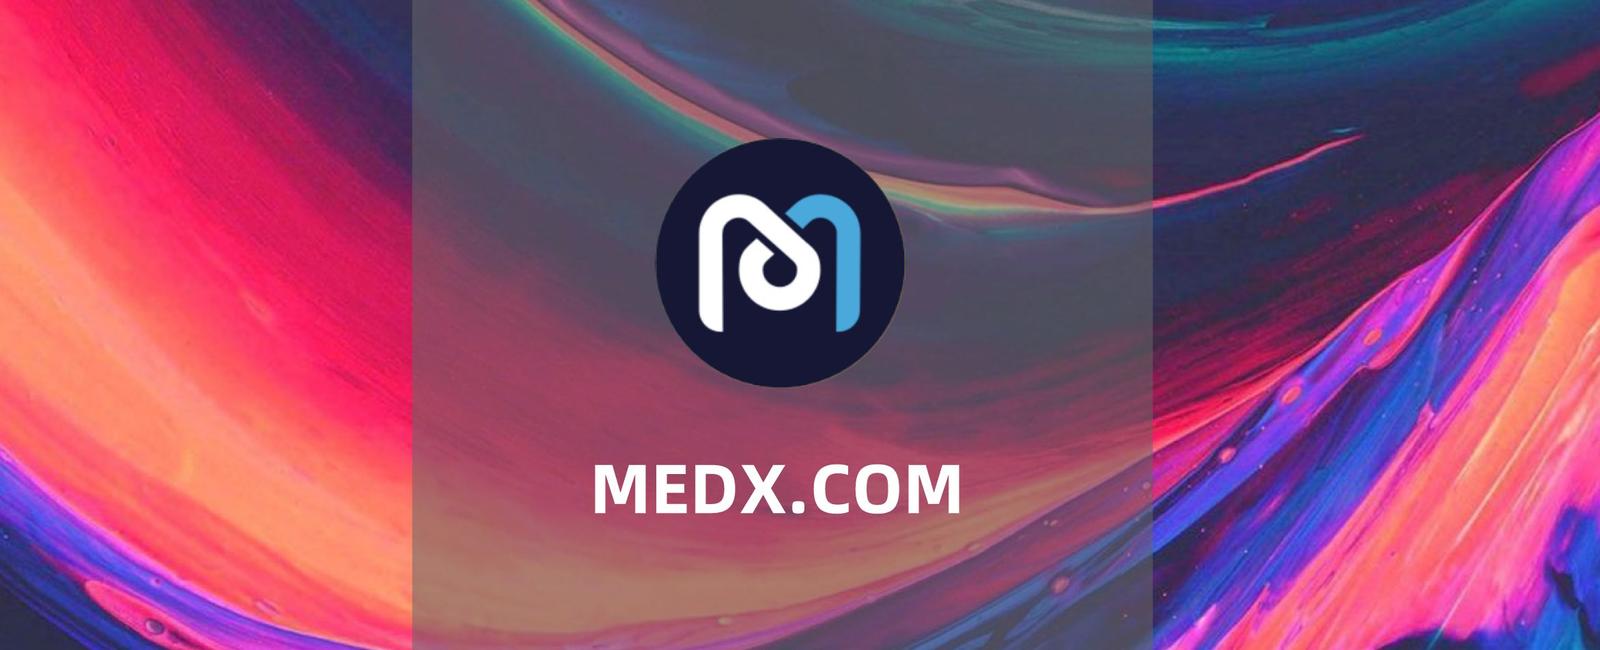 MDEX.COM:DEX、IMO、DAO为一体的DeFi平台